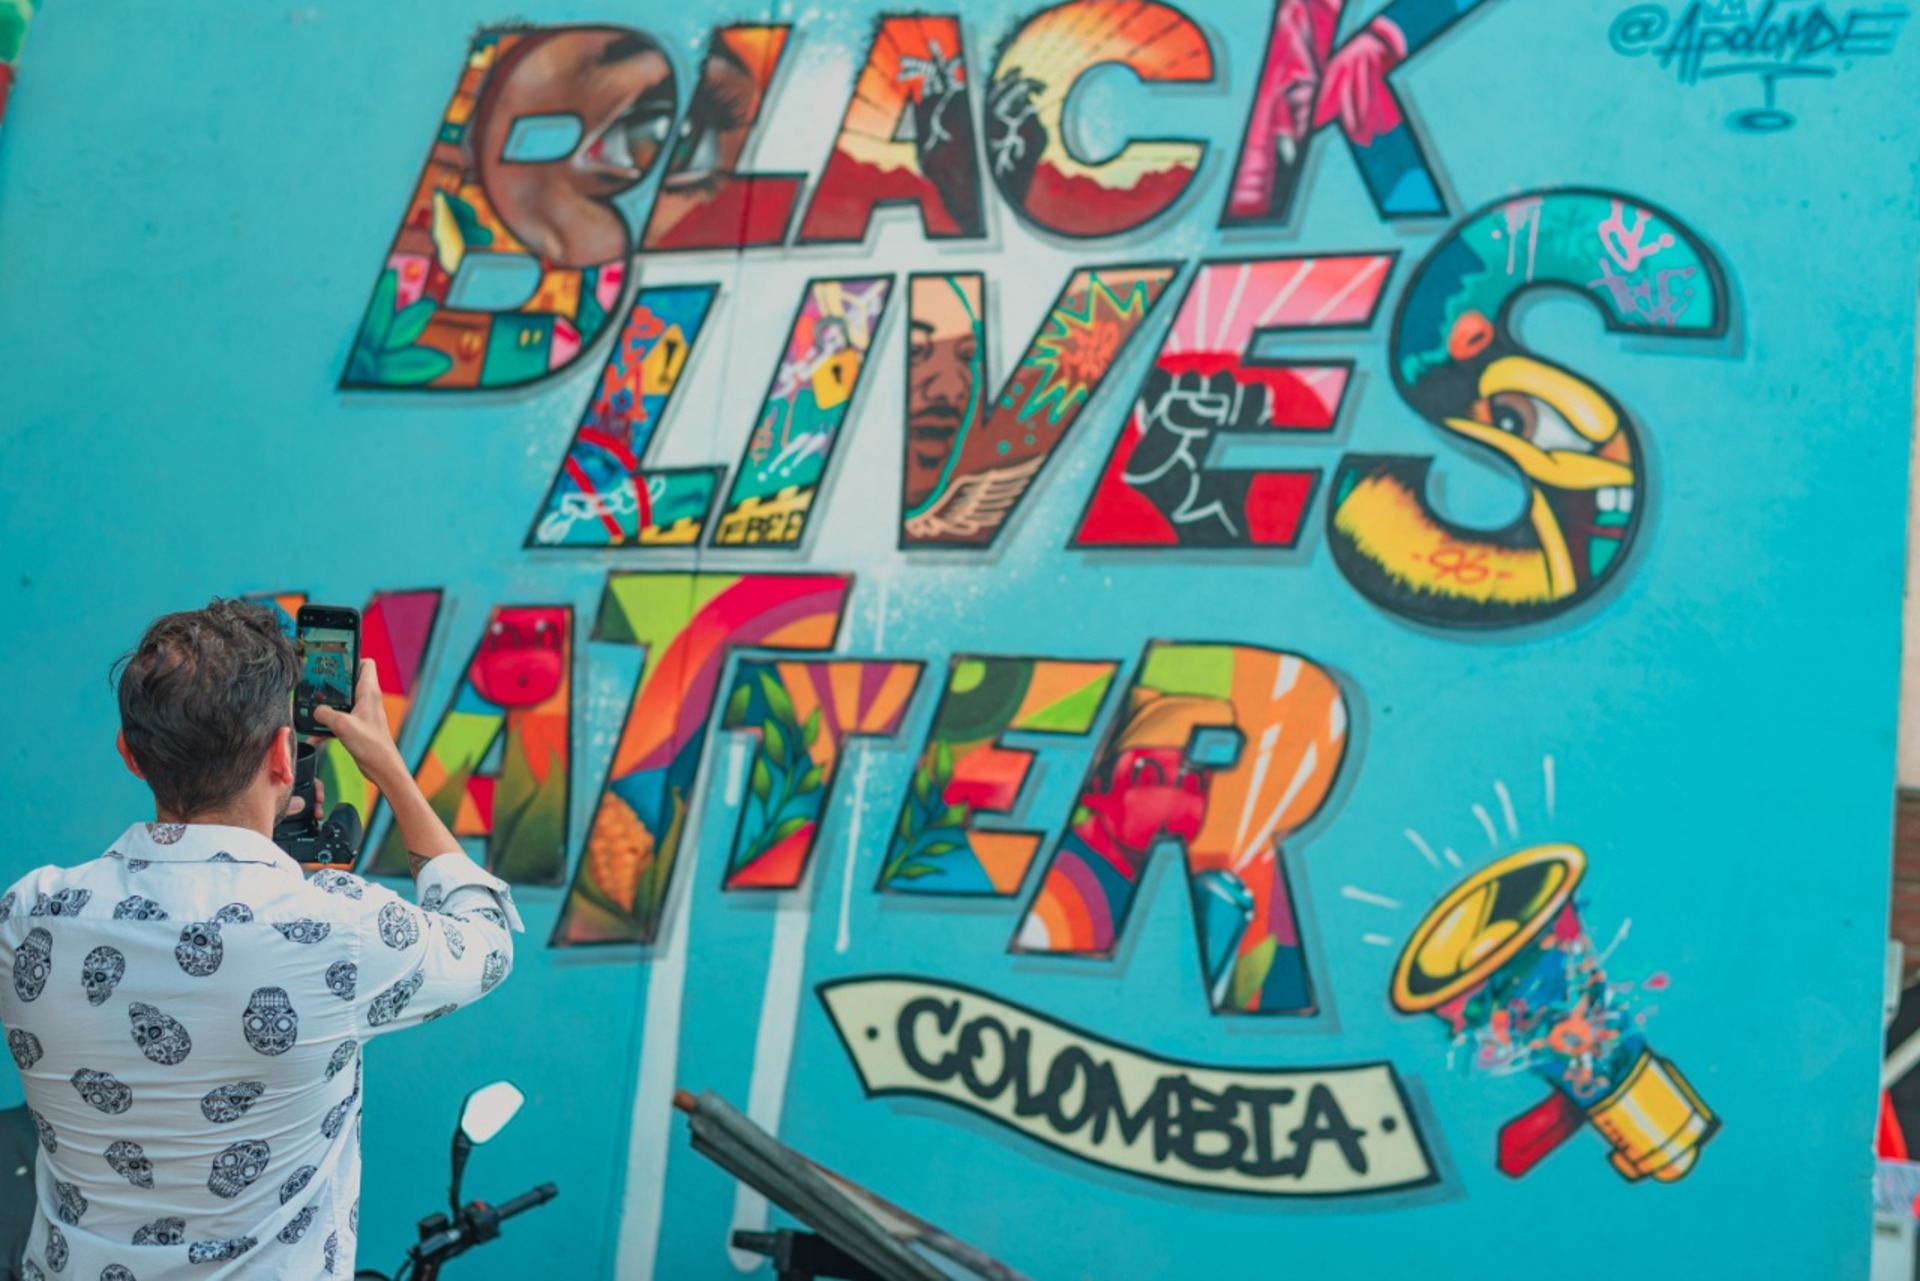 Descubre la Diversidad de Colombia: Bogotá, Eje Cafetero y Cartagena Tour de 8 días